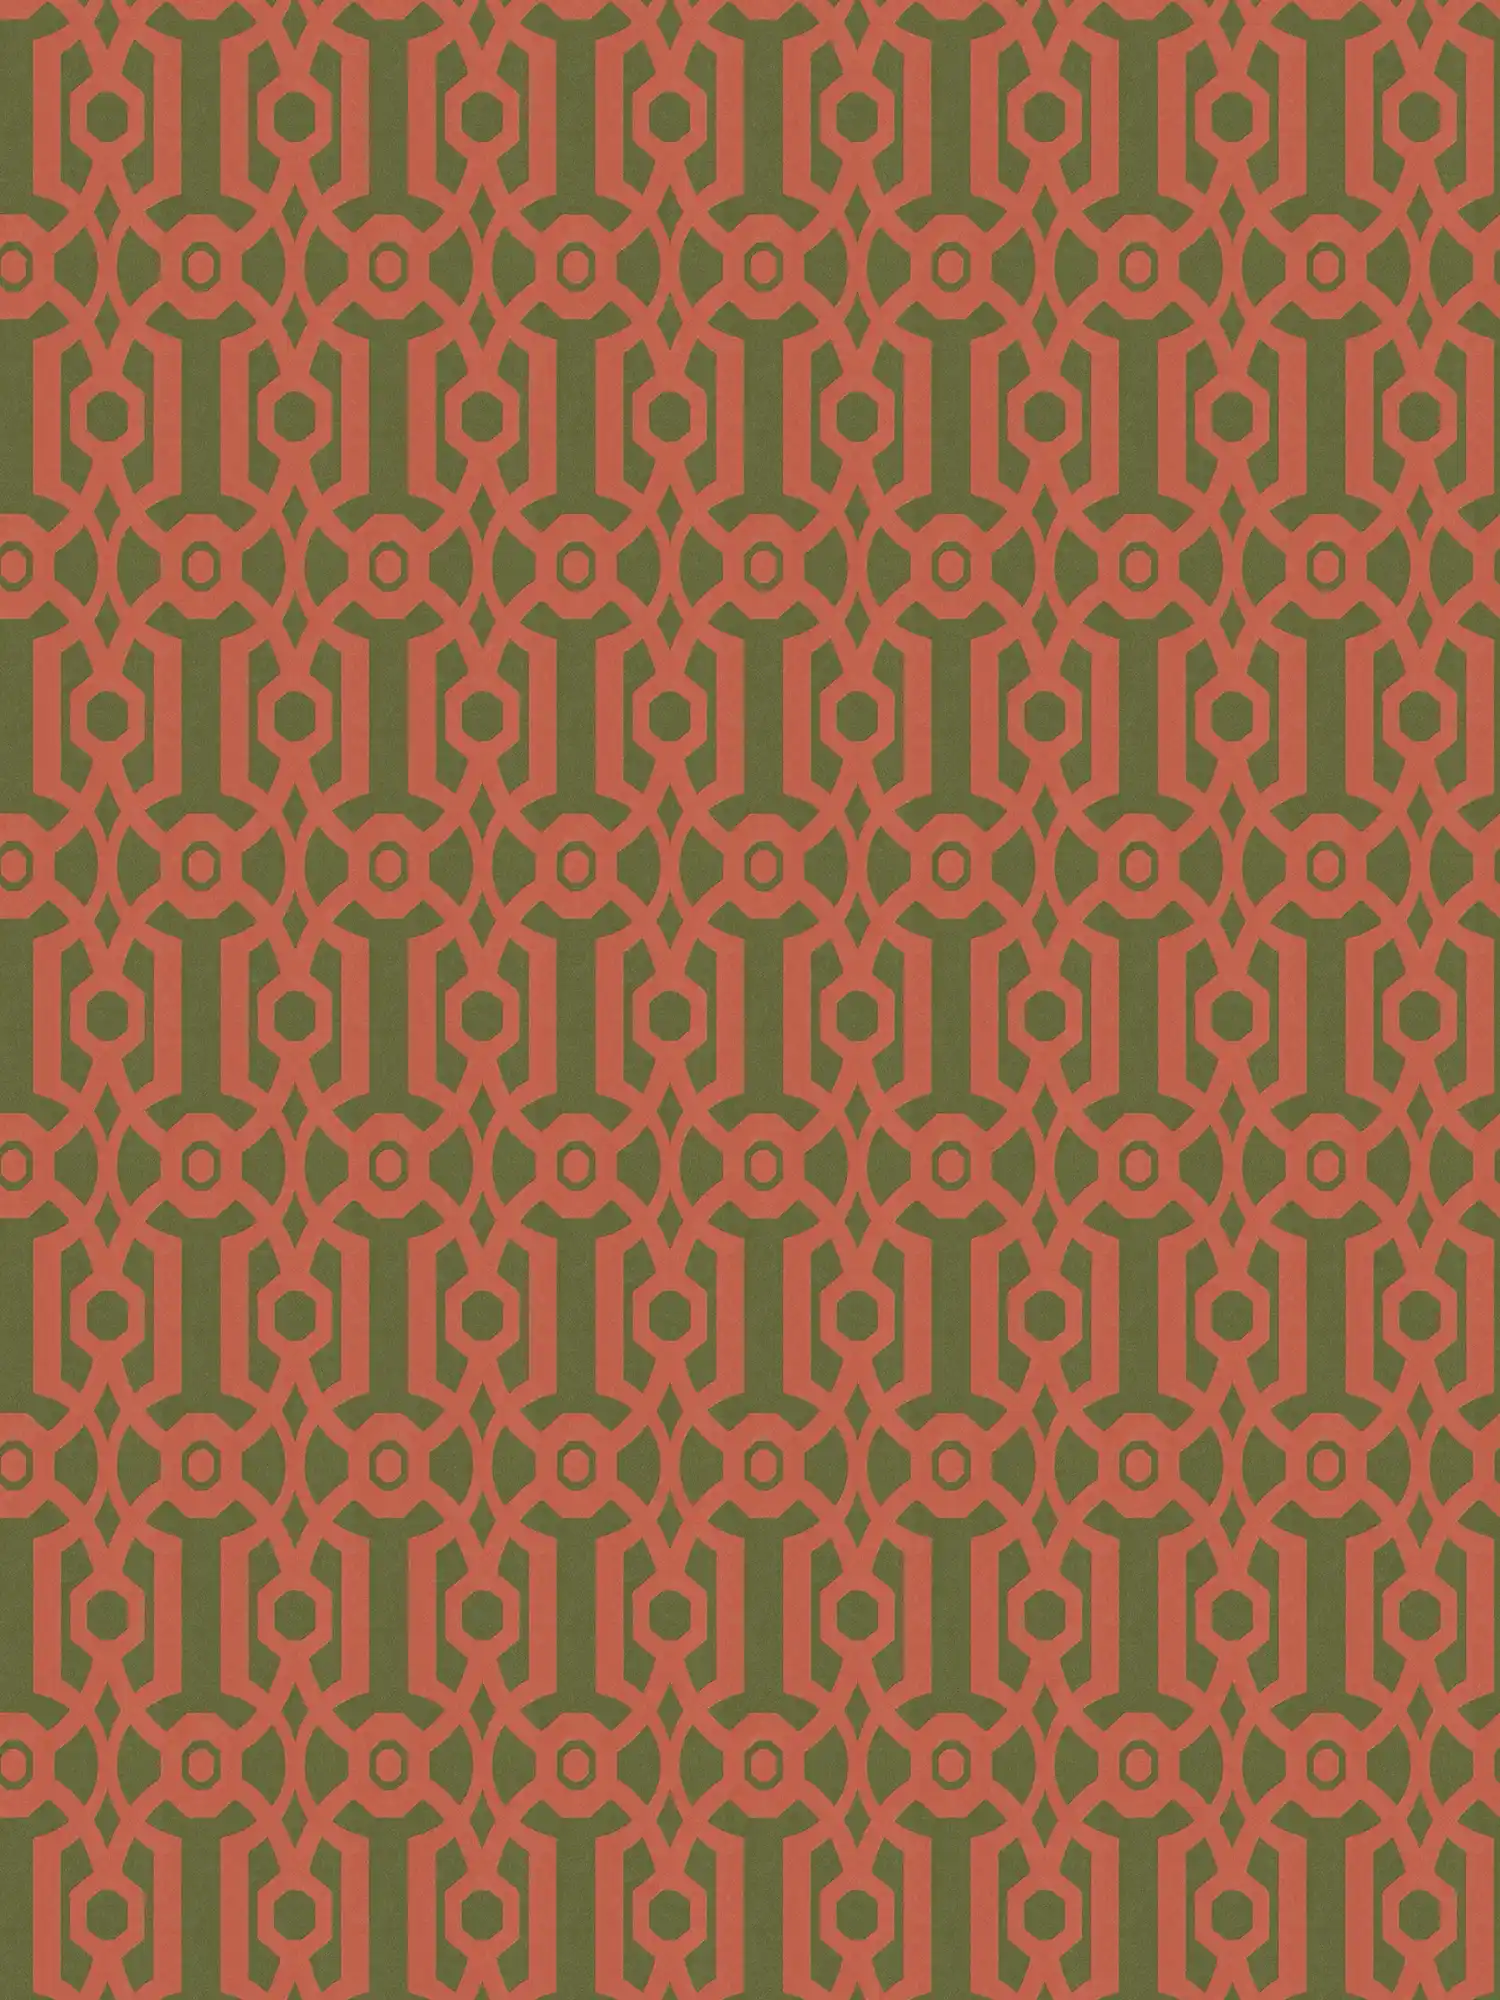         Papel pintado no tejido con patrón gráfico en estilo inglés - naranja, verde
    